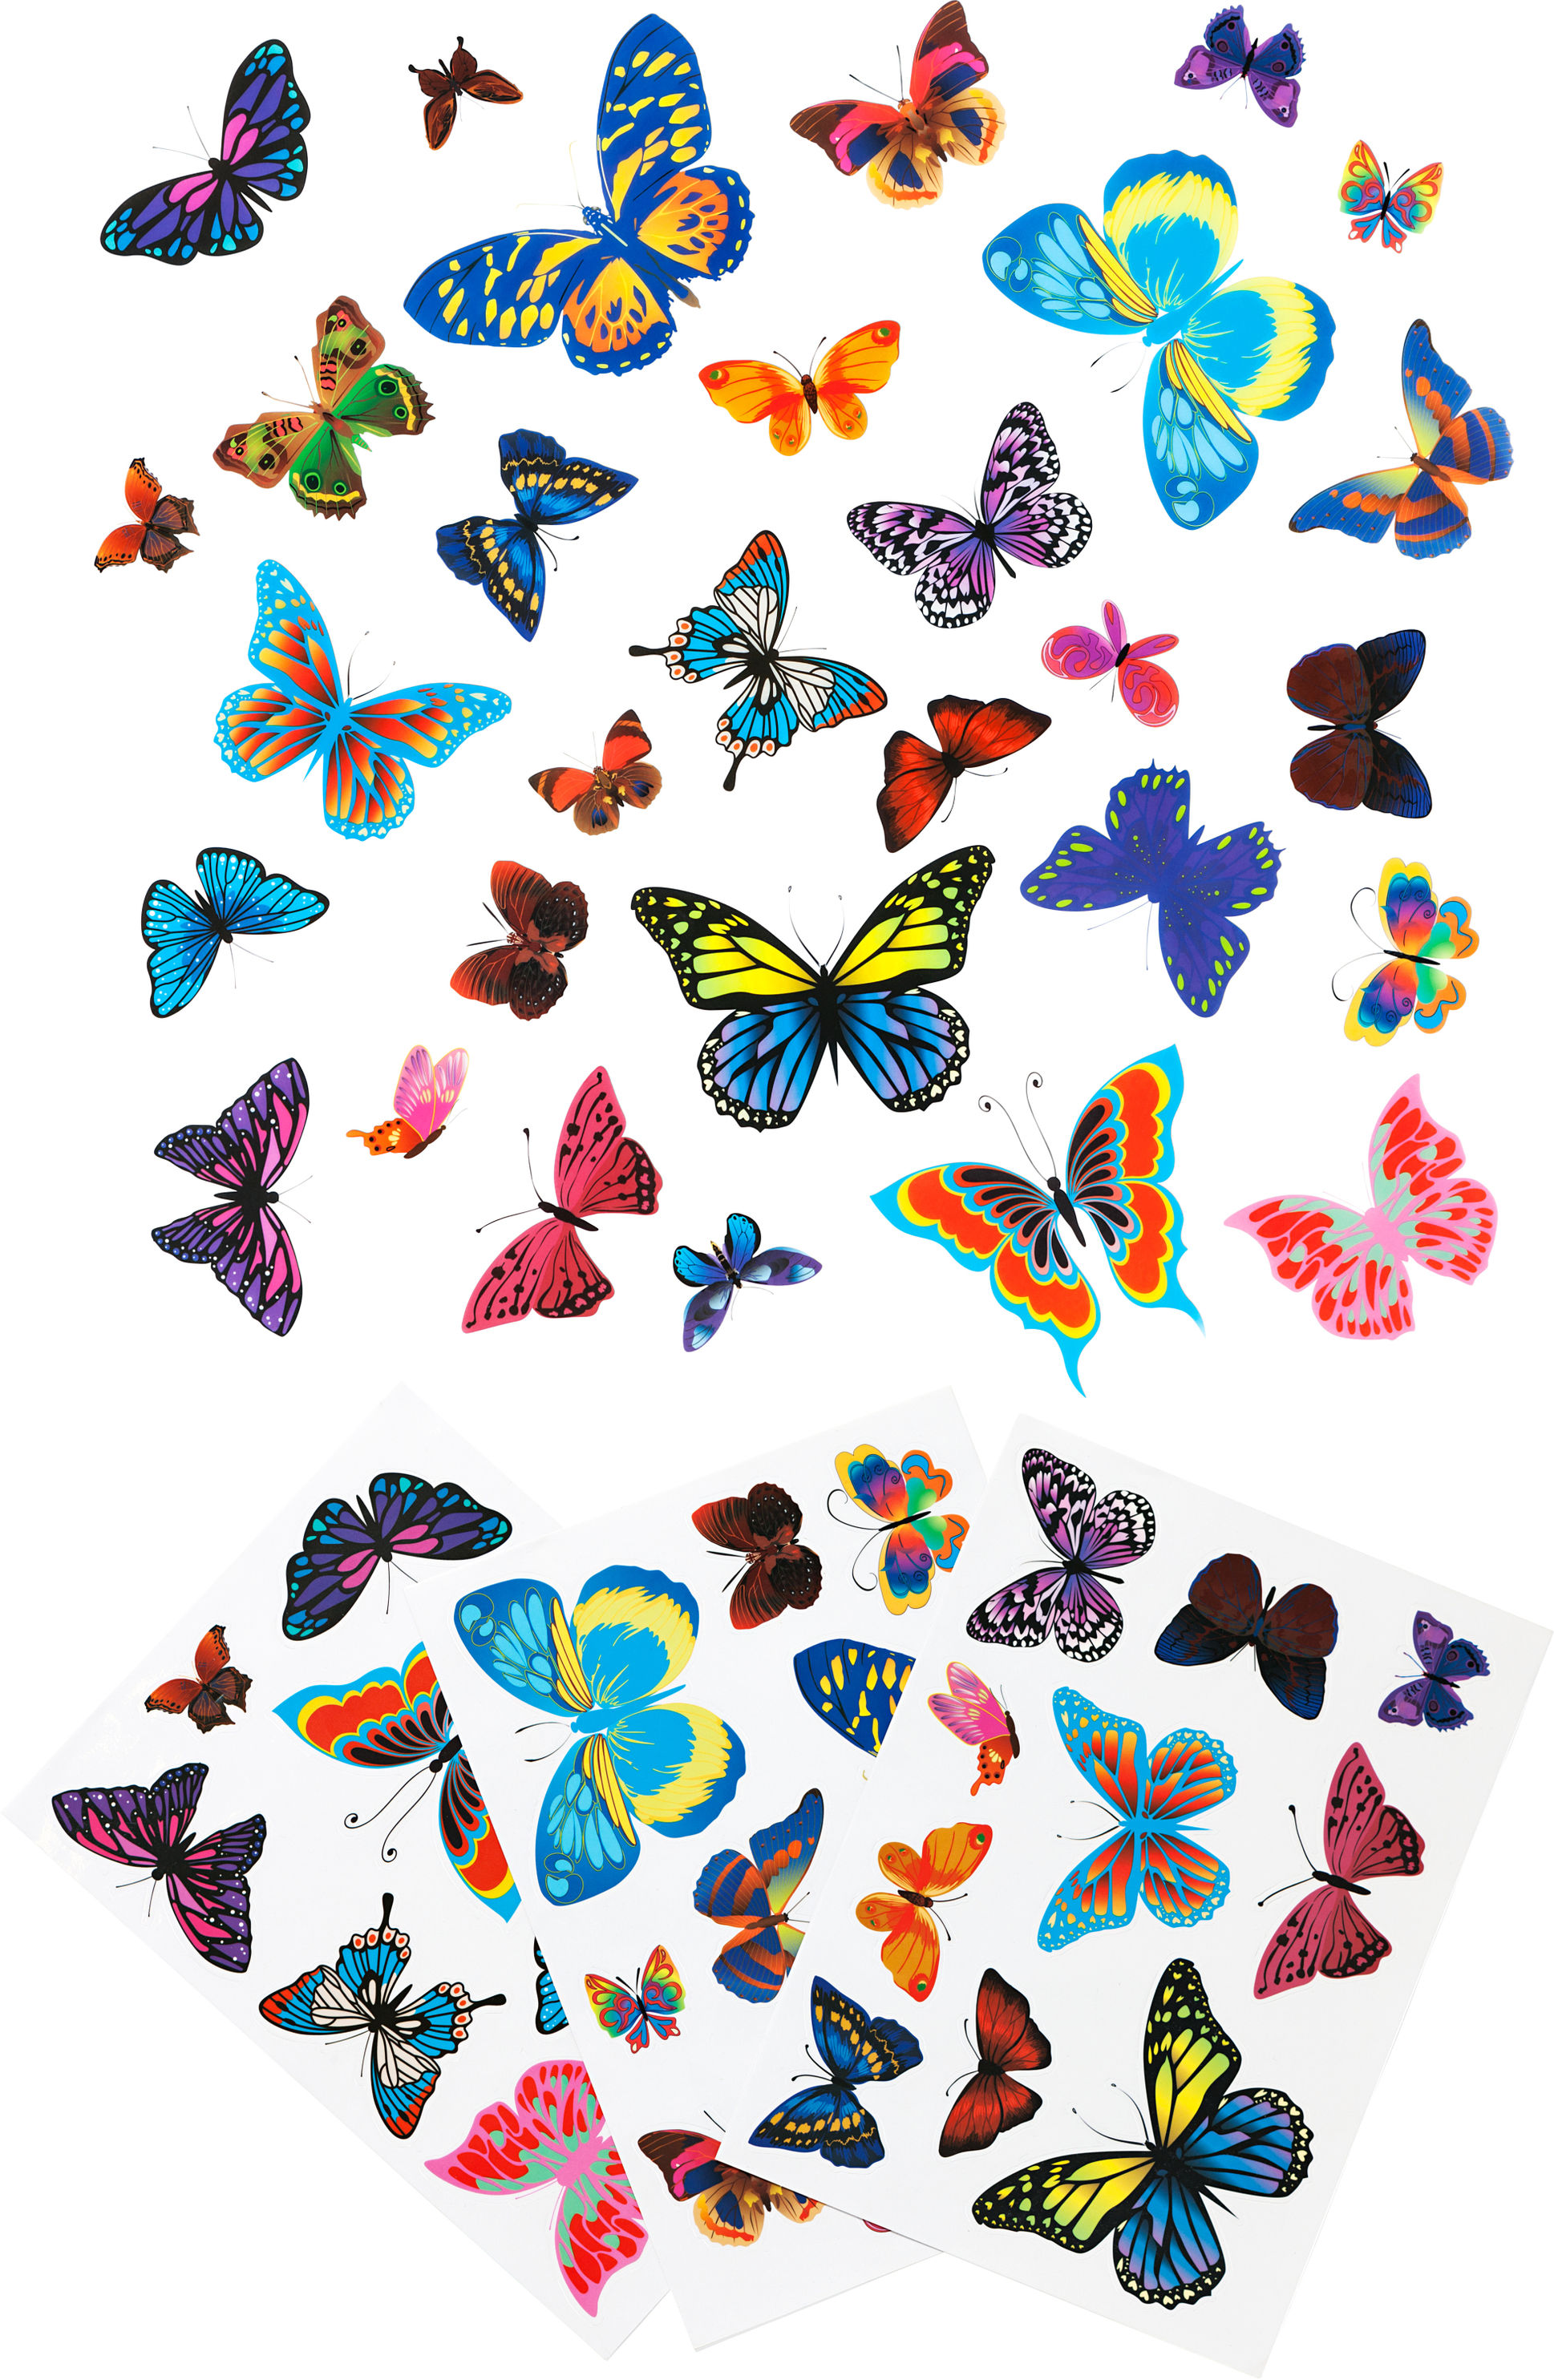 Fenstersticker ''Schmetterlinge'' 60-teilig